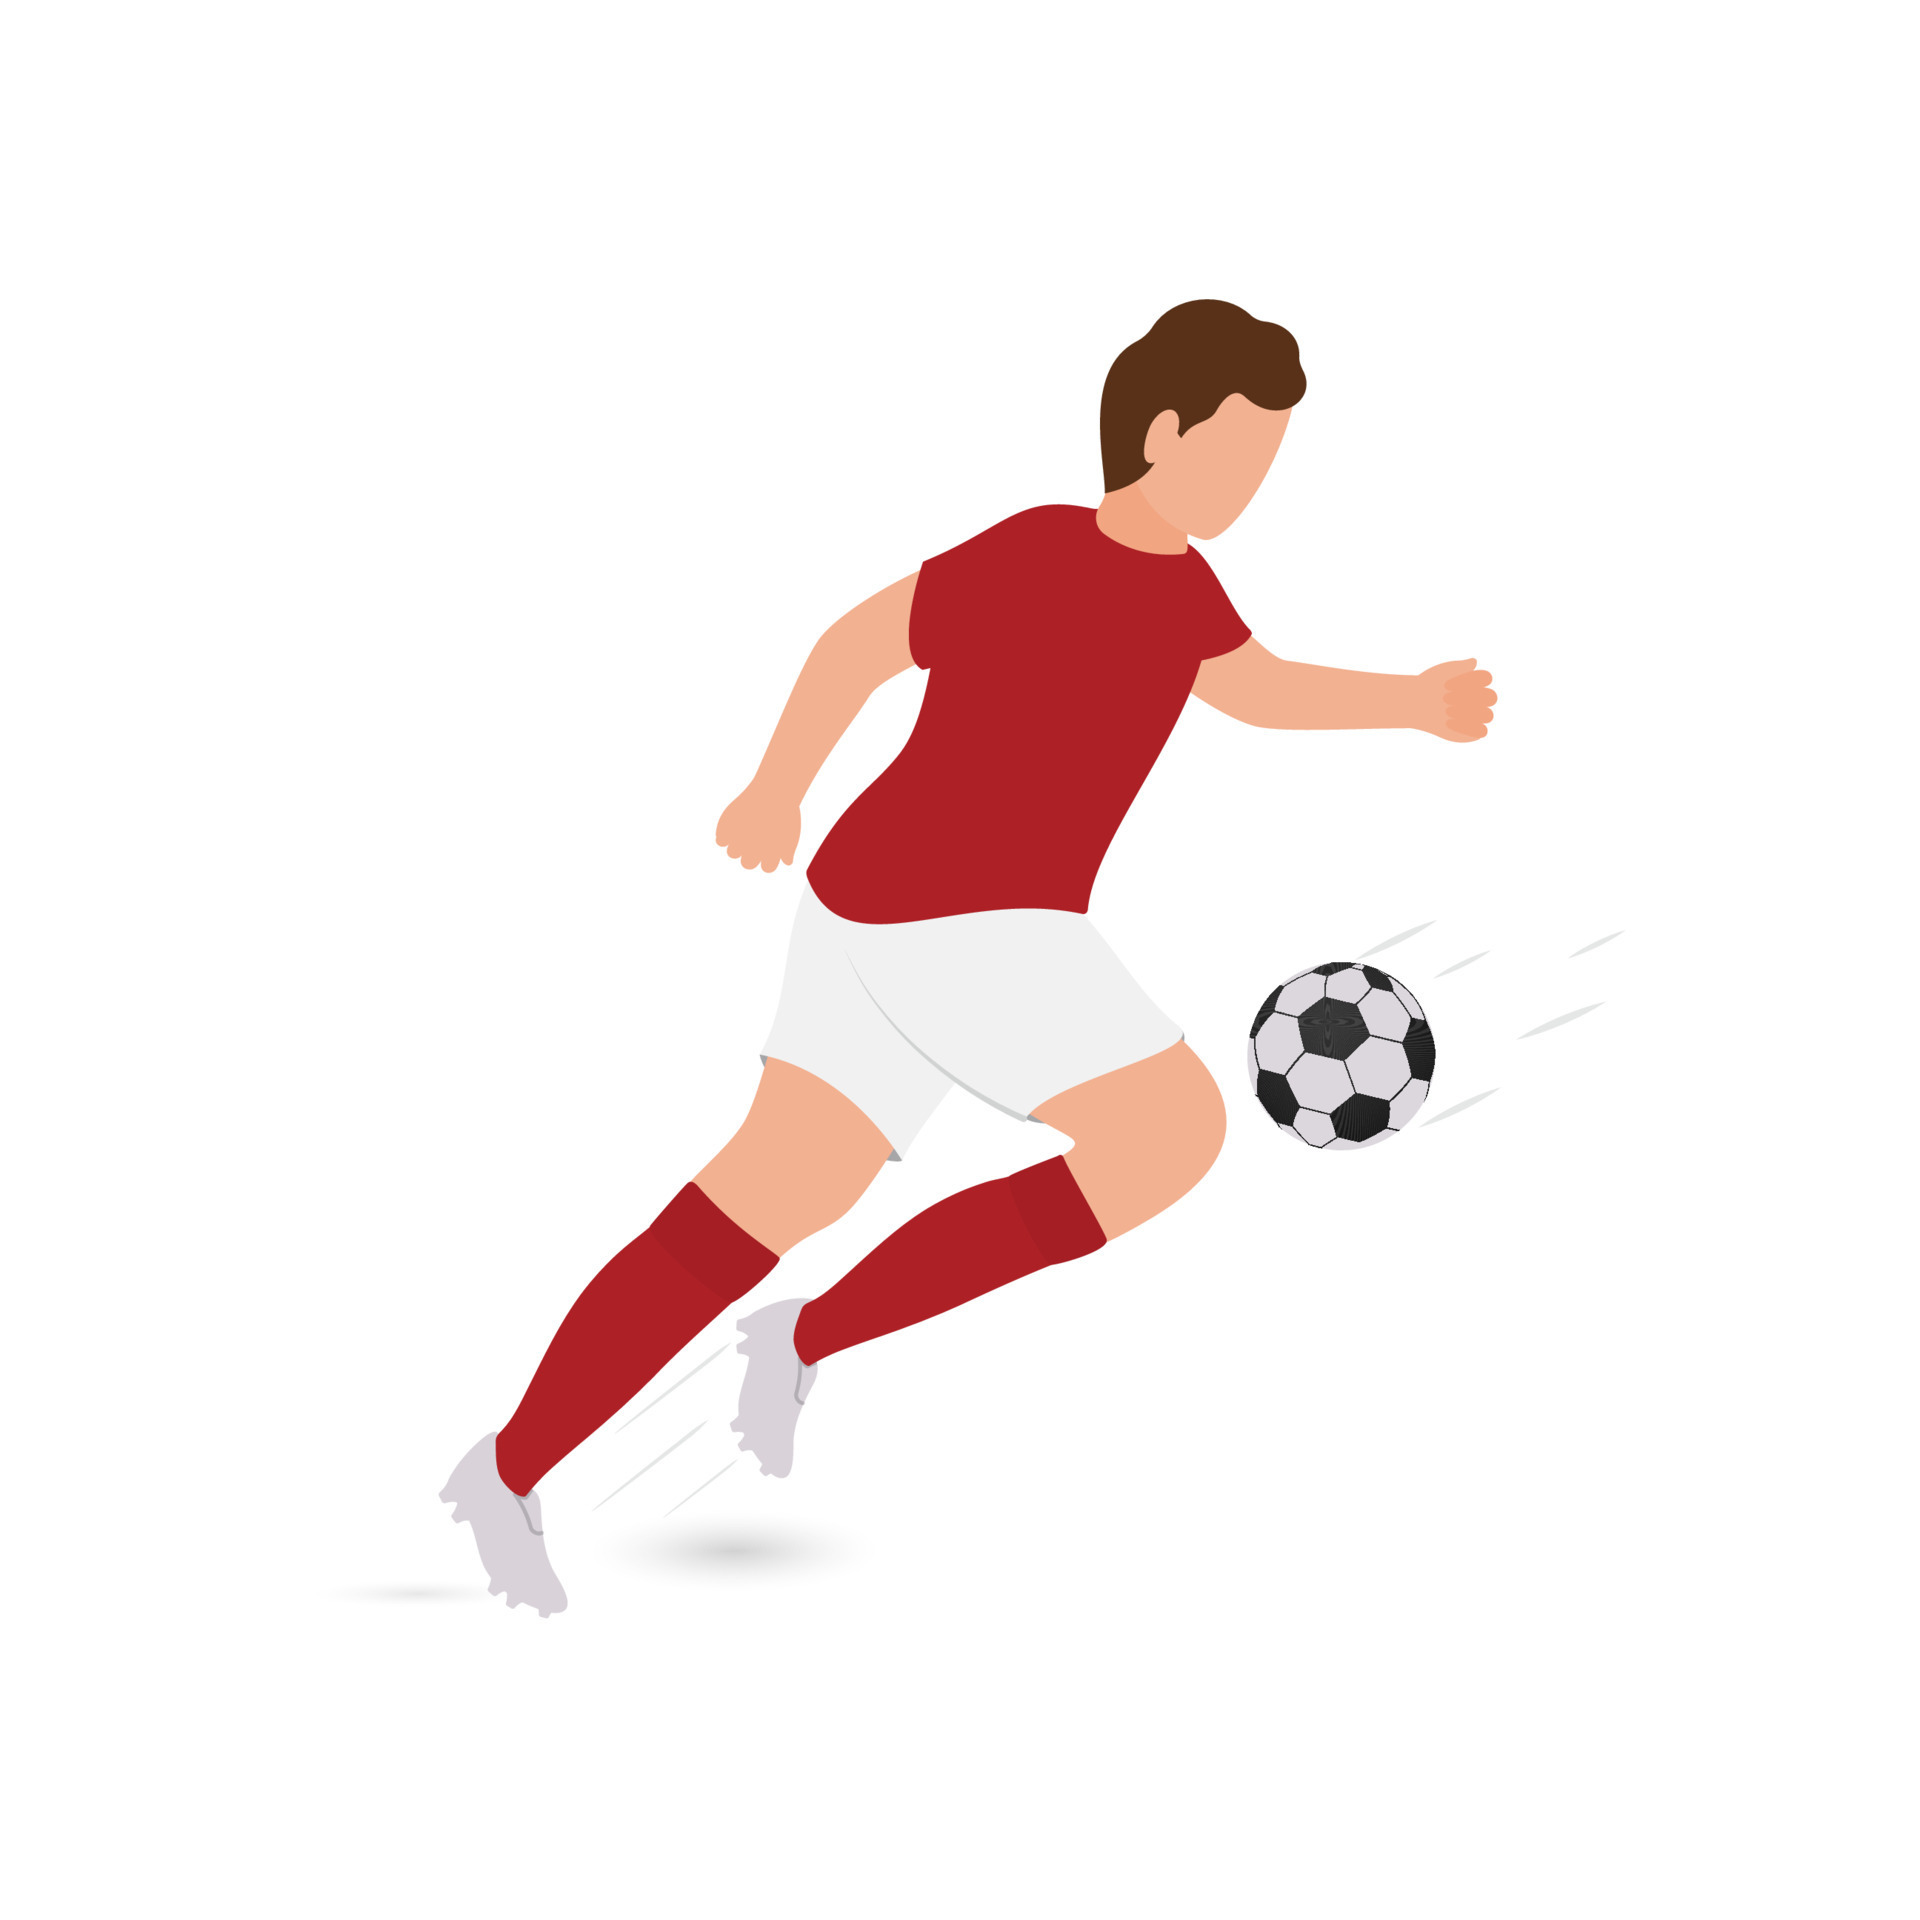 Jogo de futebol ao vivo em smartphone 3d com jogadores de futebol sem rosto  contra fundo roxo